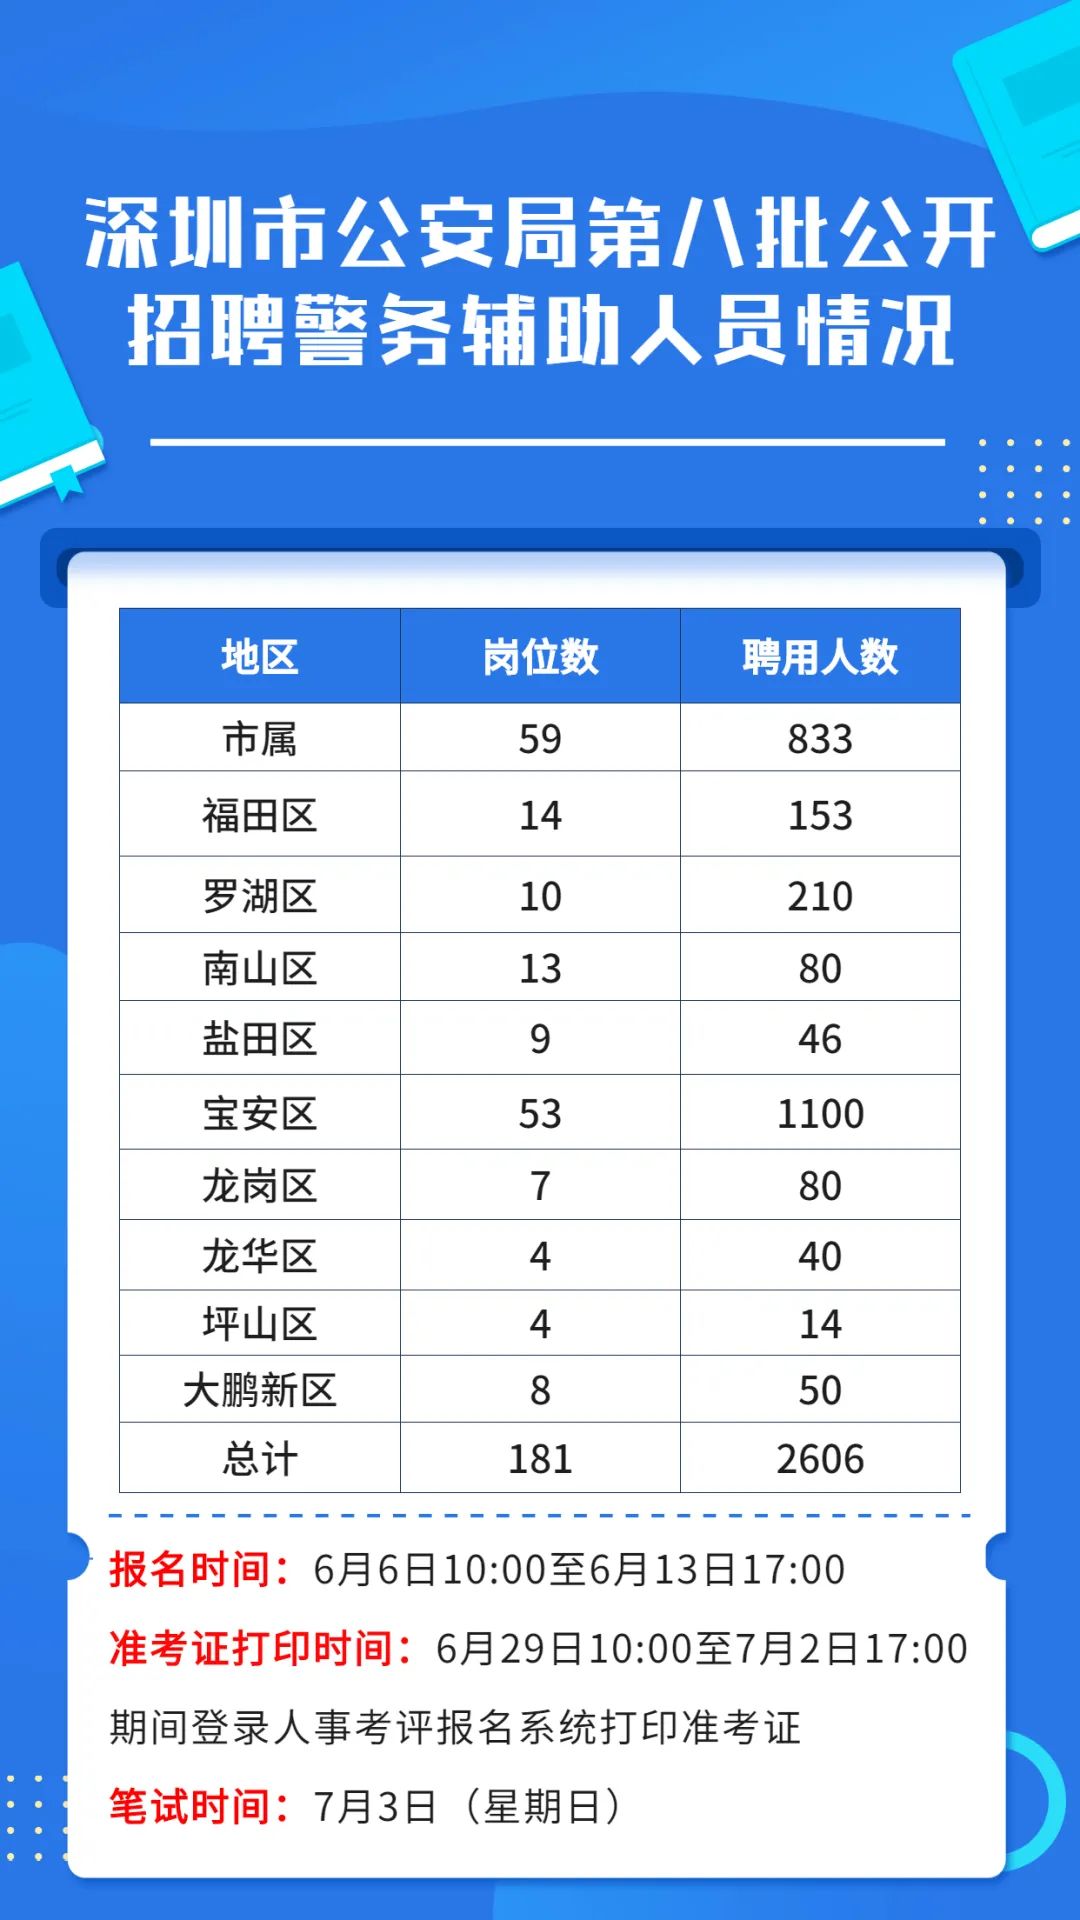 深圳公安面向全国公开招聘2606人 今起报名